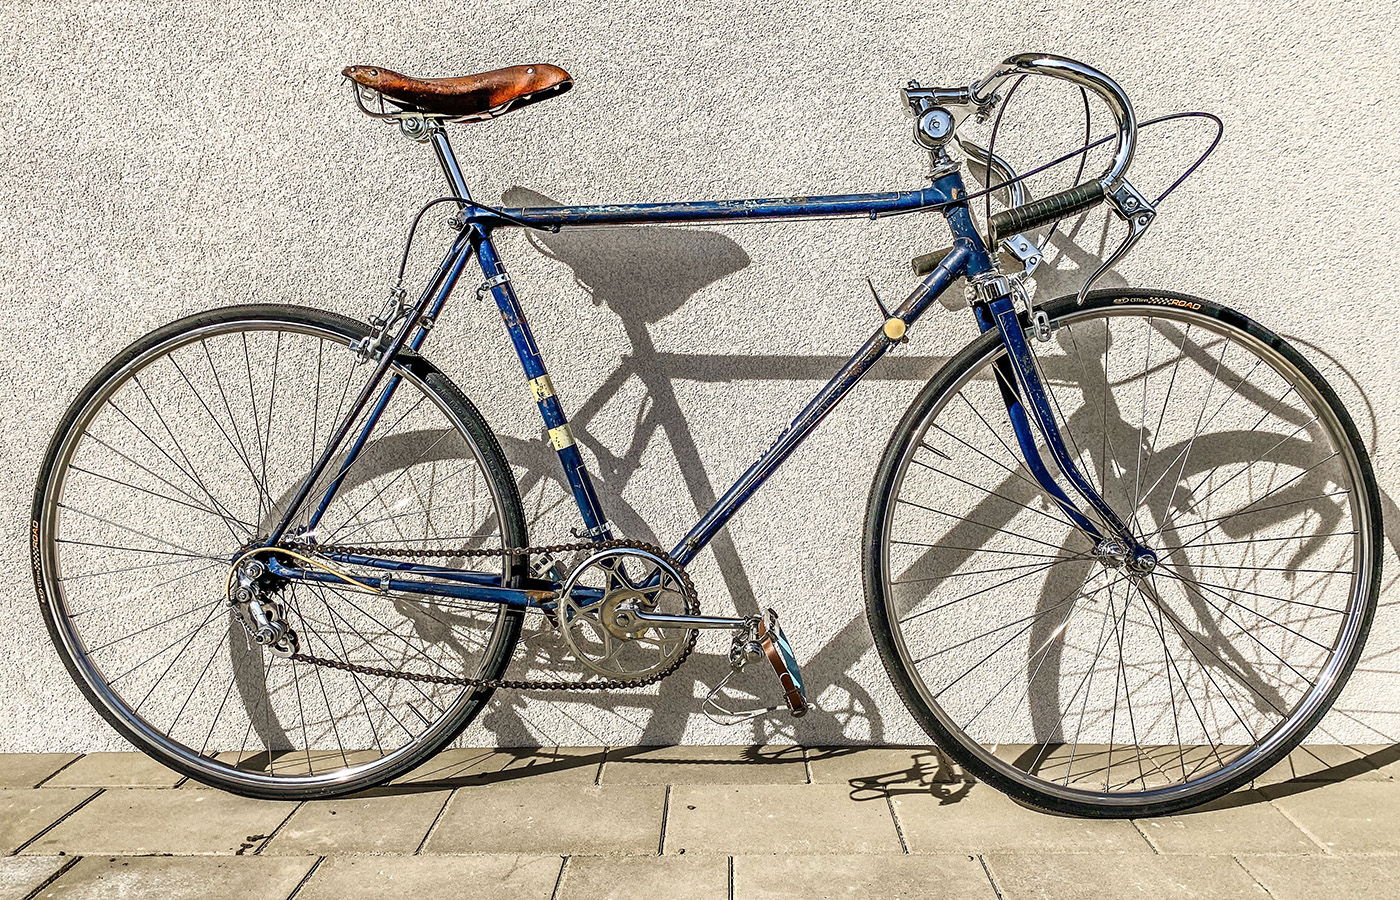 Kolarski klasyk w nowym blasku – renowacja roweru Mesko Eros